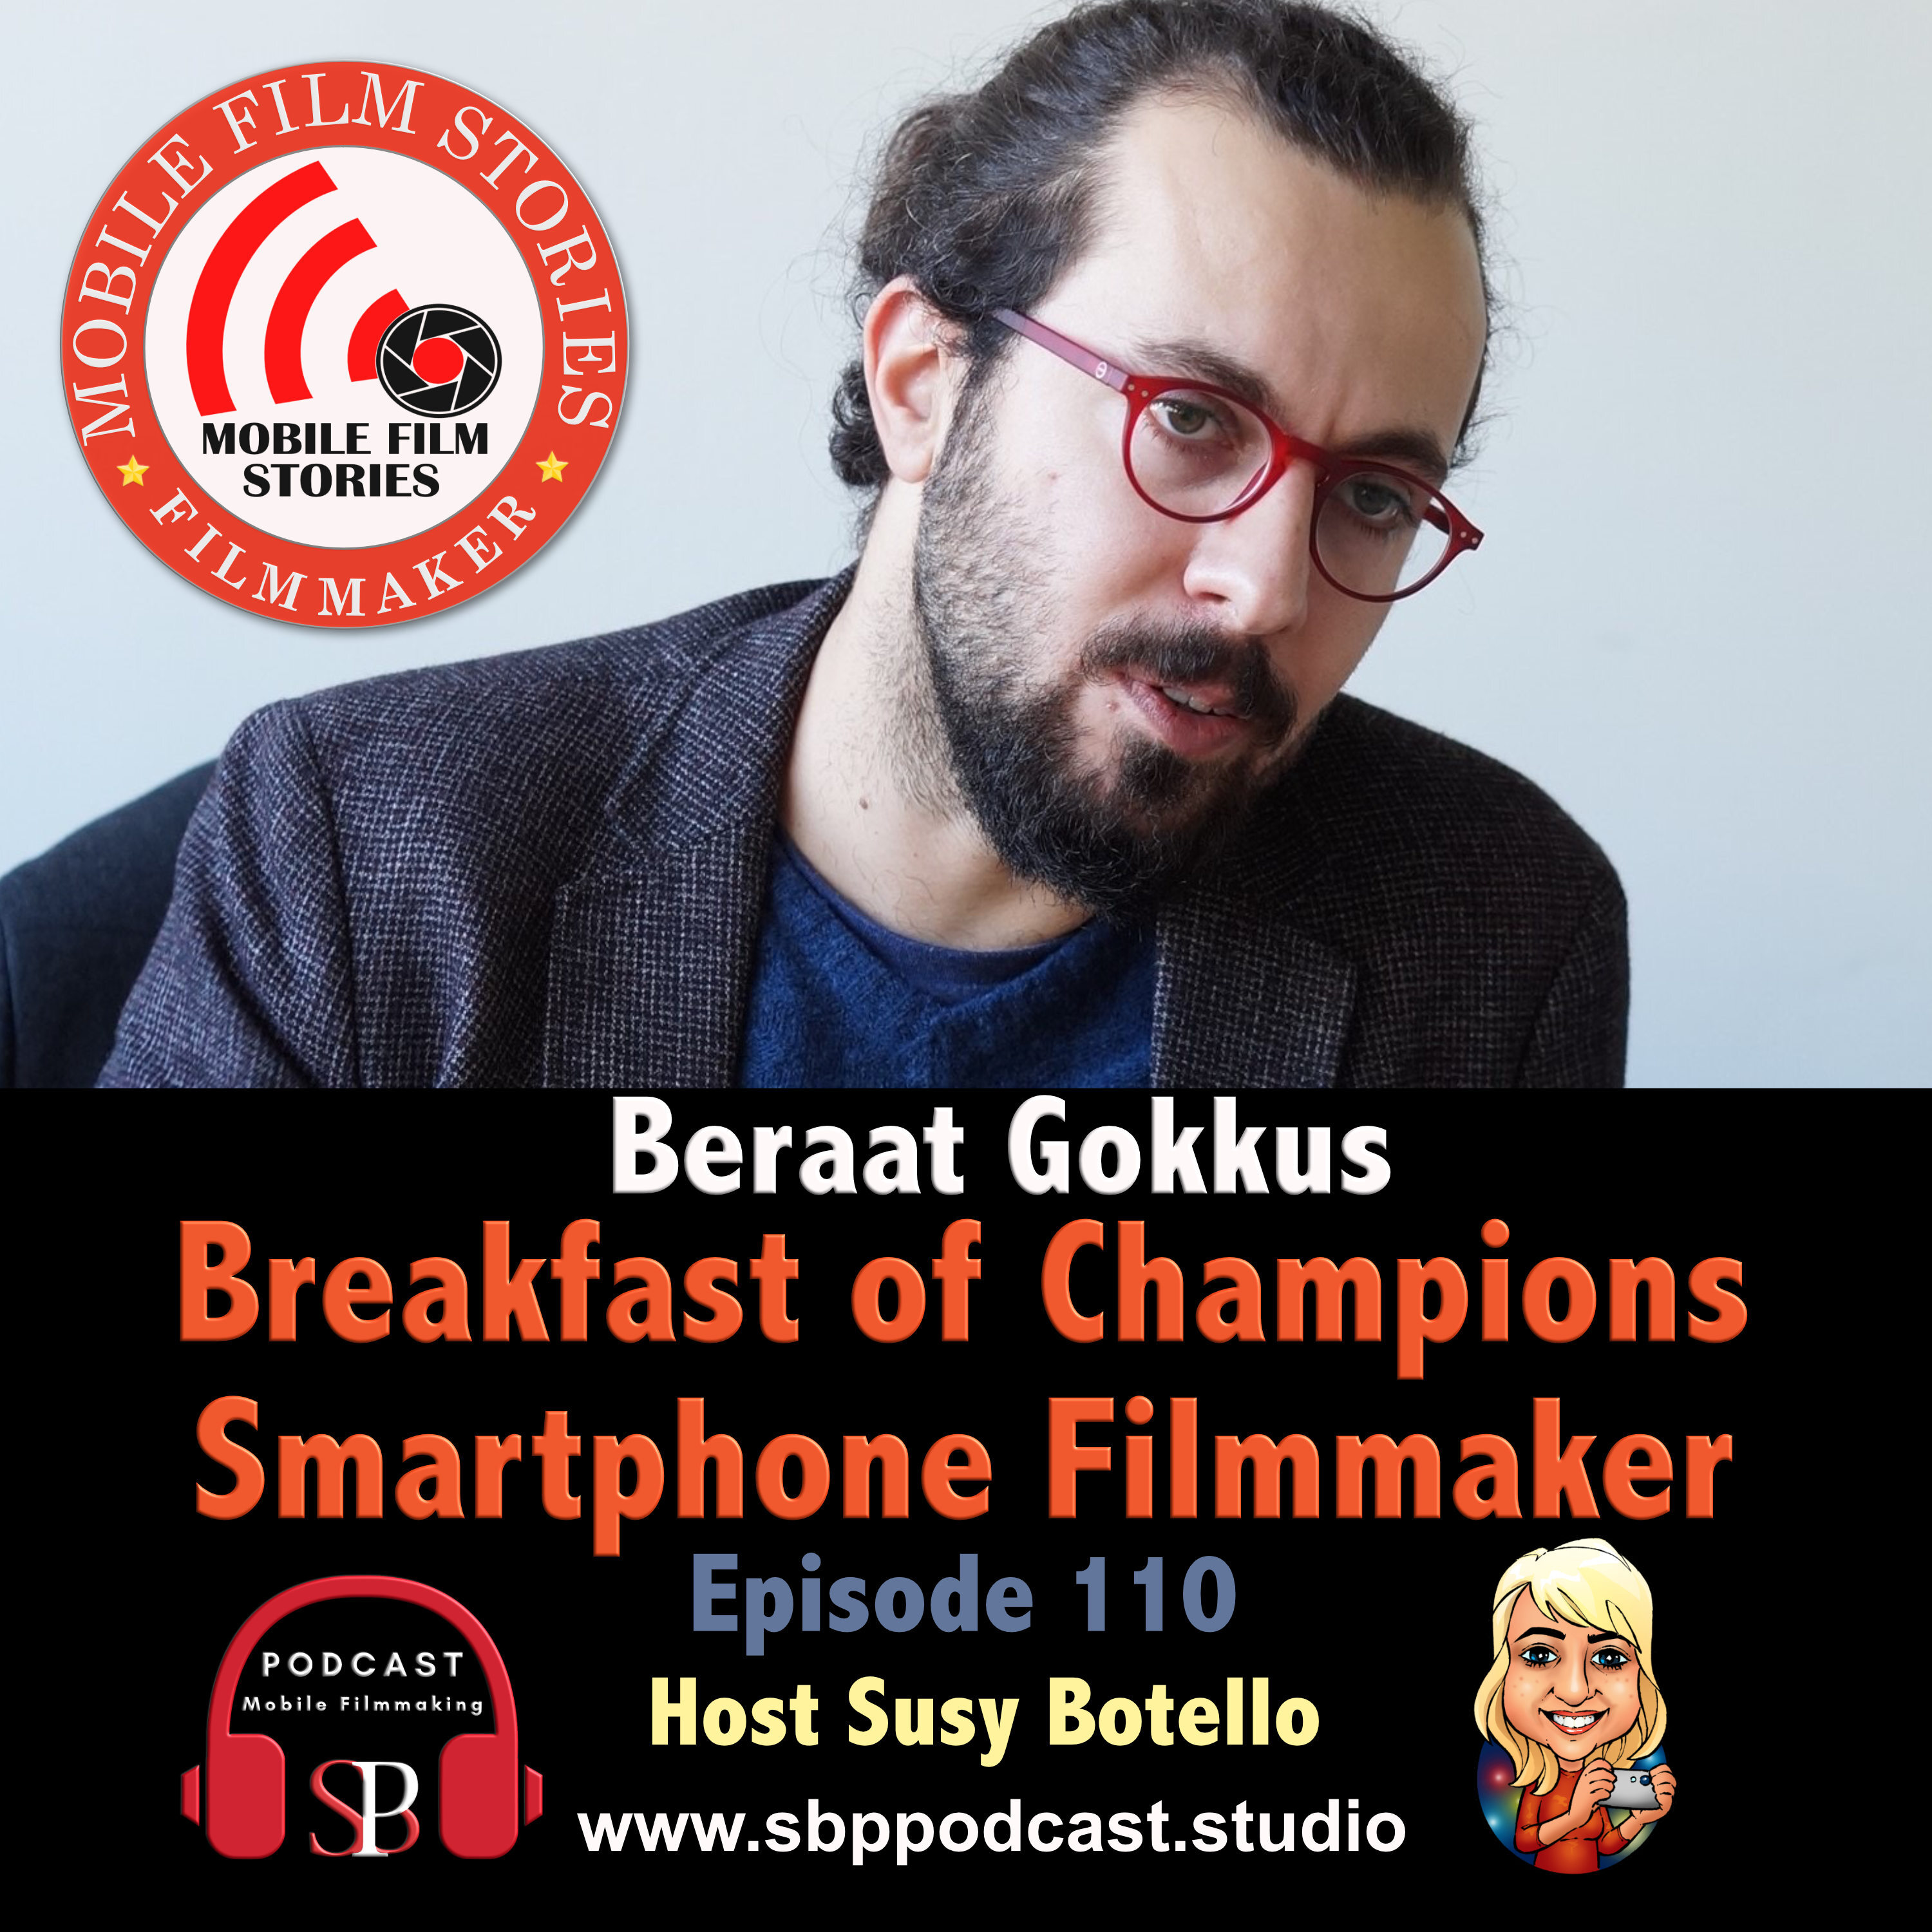 Breakfast of Champions Smartphone Filmmaker - Beraat Gokkus Image